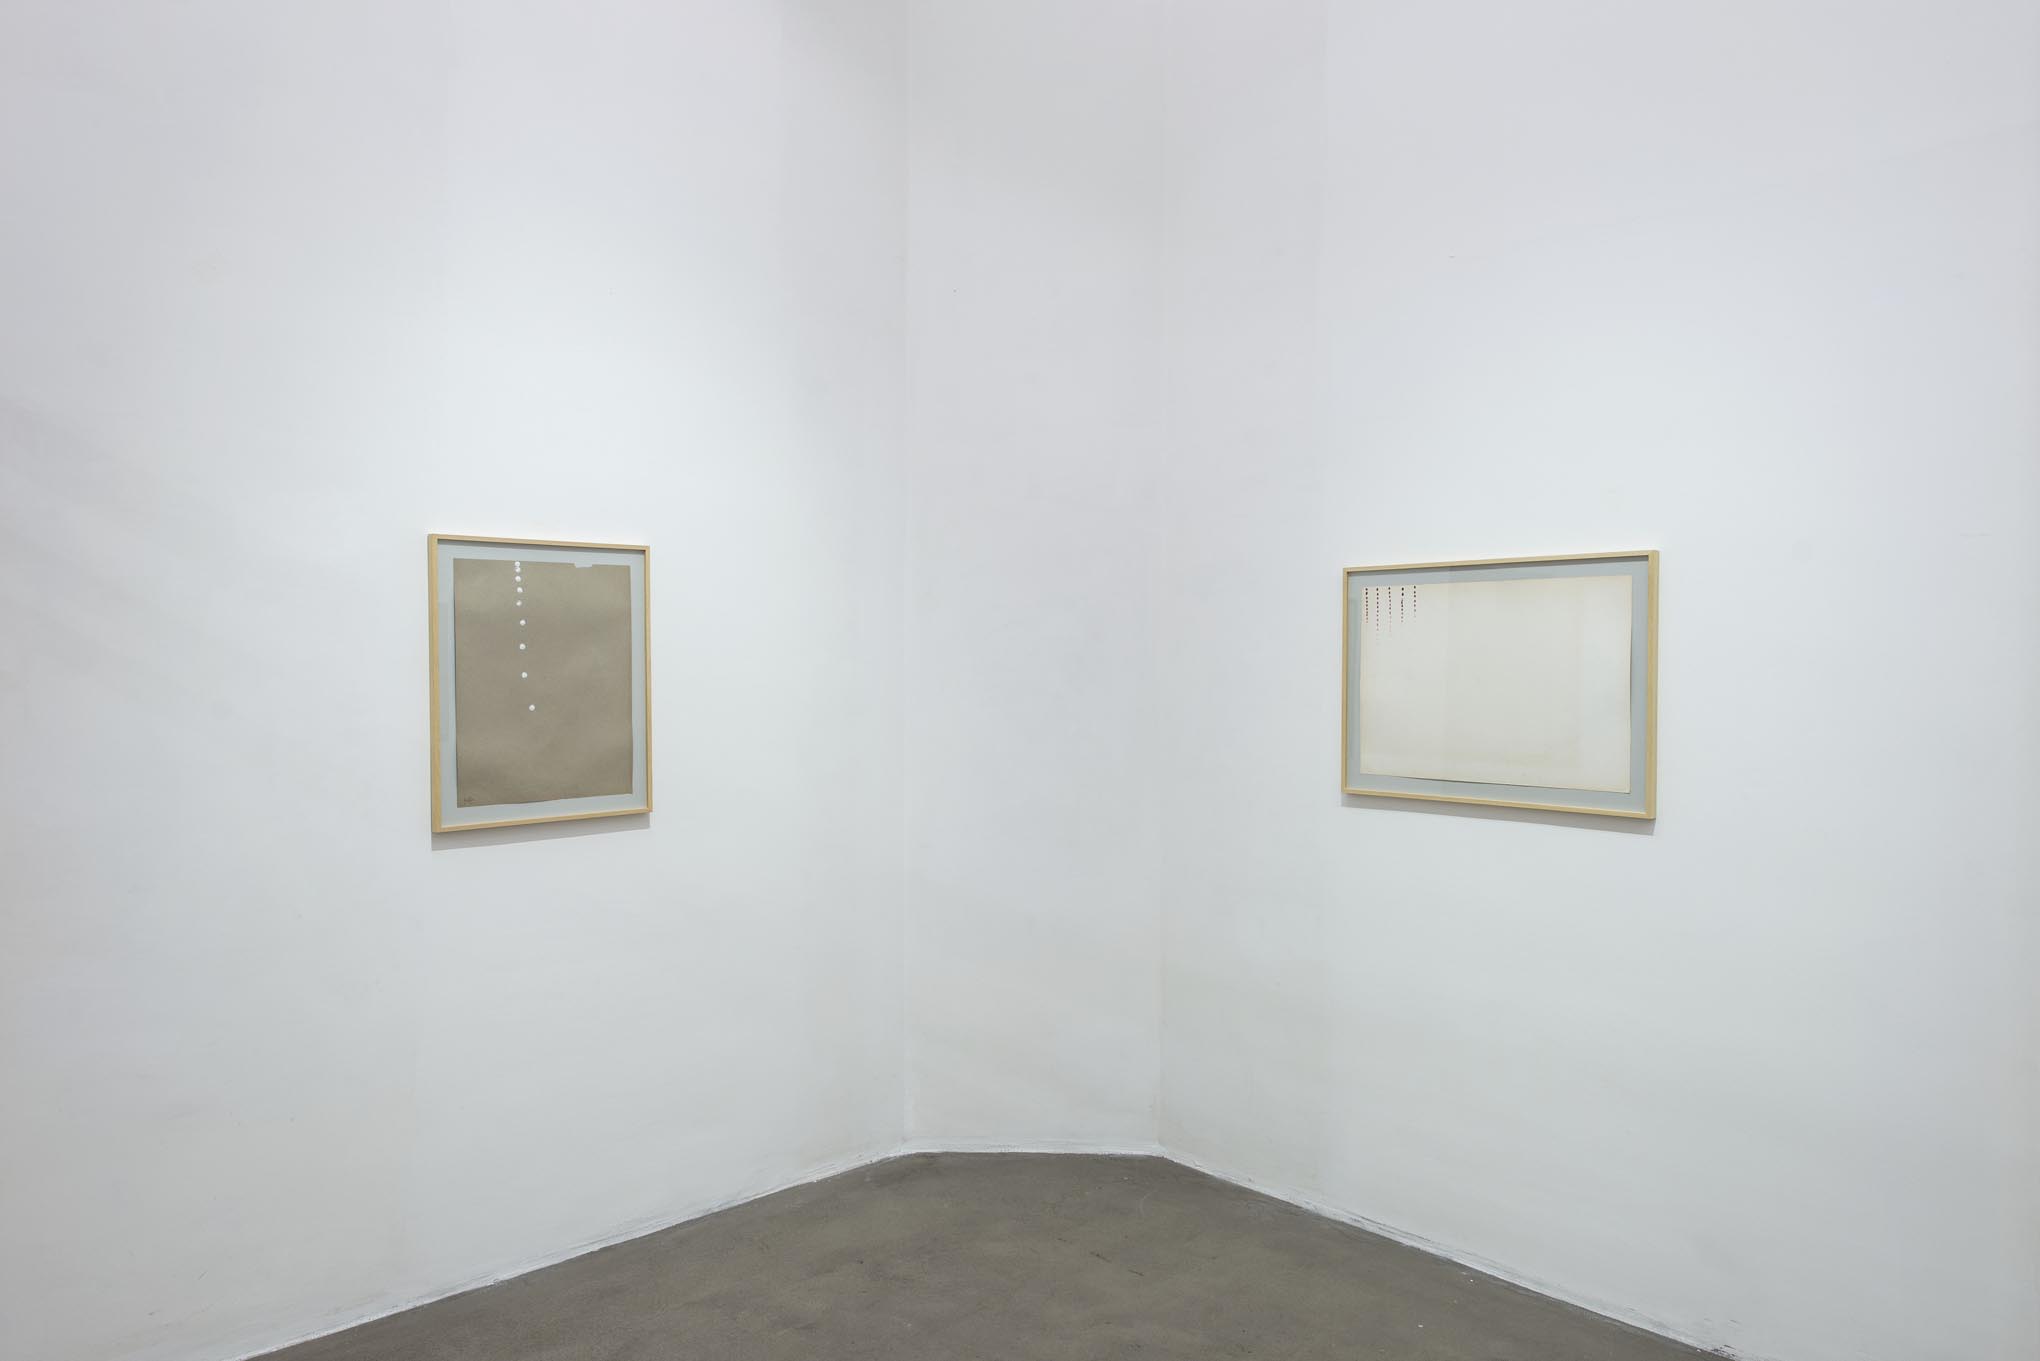 3. Giorgio Griffa: Works on Paper
Installation view, Roma, 2014, foto Giorgio Benni